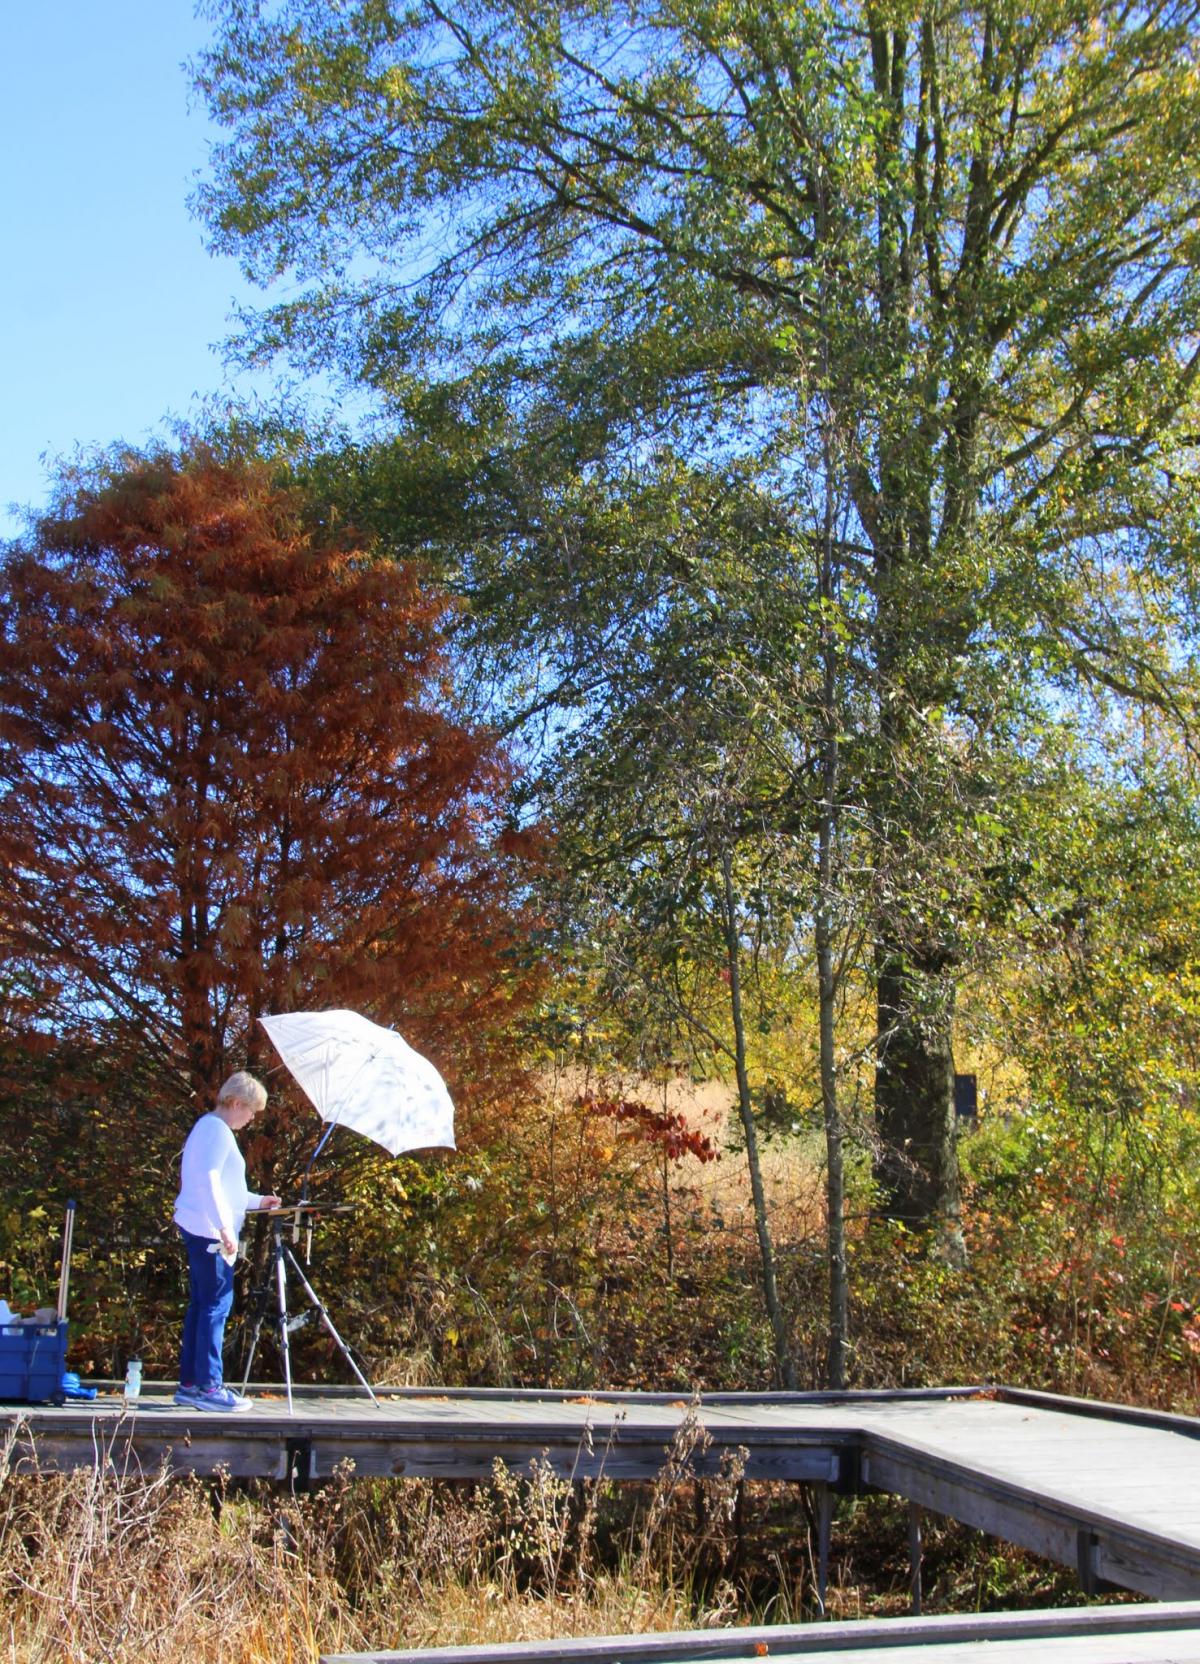 Adkins Arboretum To Host Plein Air Event Sat Nov 5